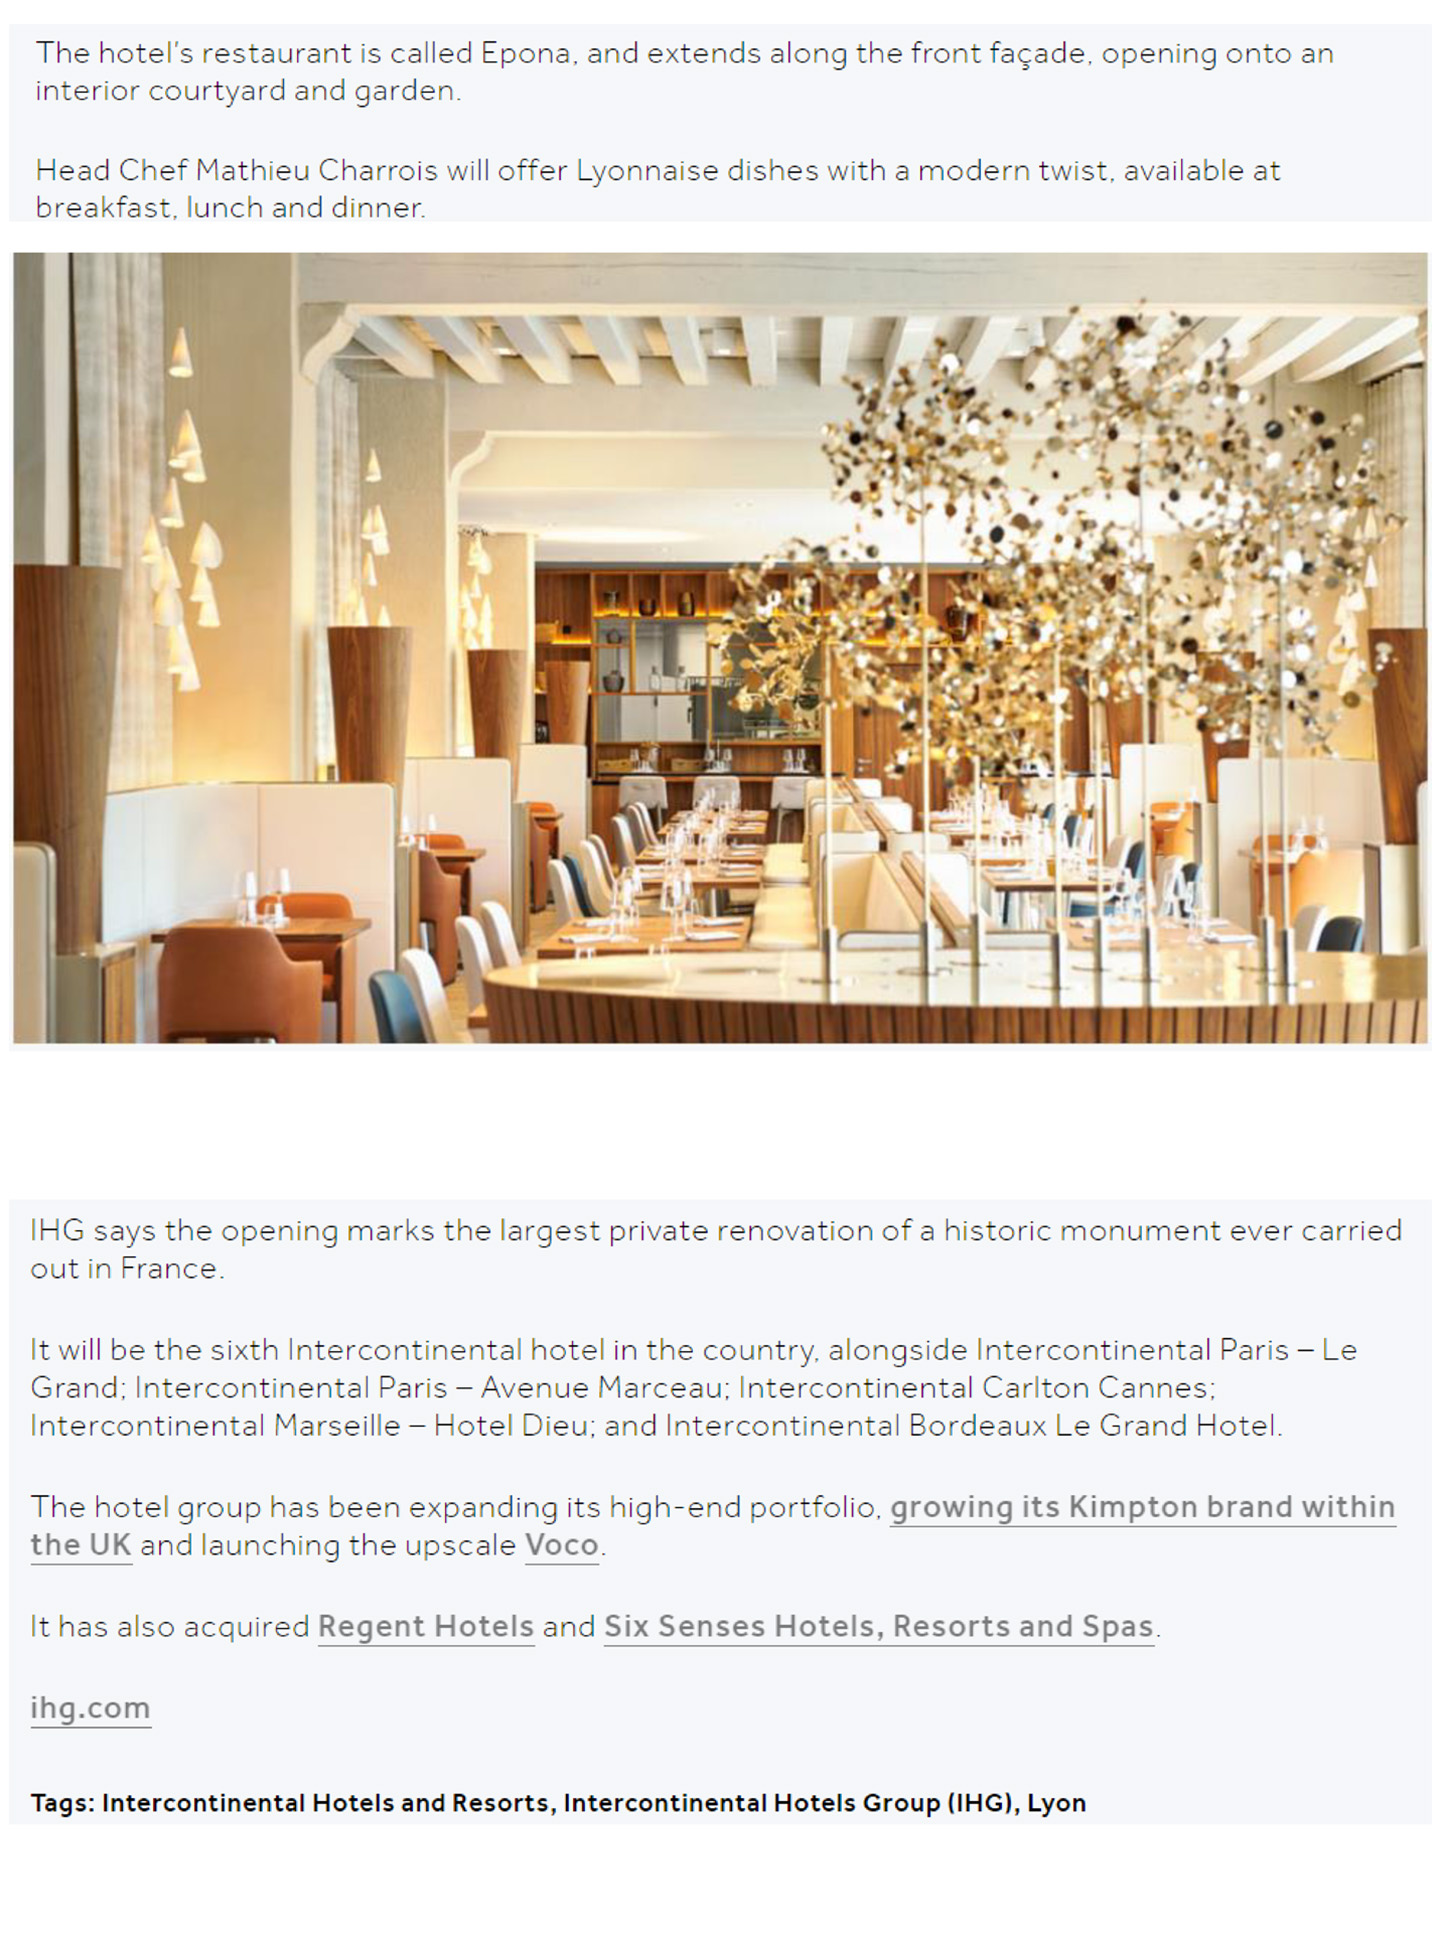 Article sur l'InterContinental Lyon - Hôtel Dieu réalisé par le studio jean-Philippe Nuel dans le magazine business traveller, nouvel hotel lifestyle, architecture d'intérieur de luxe